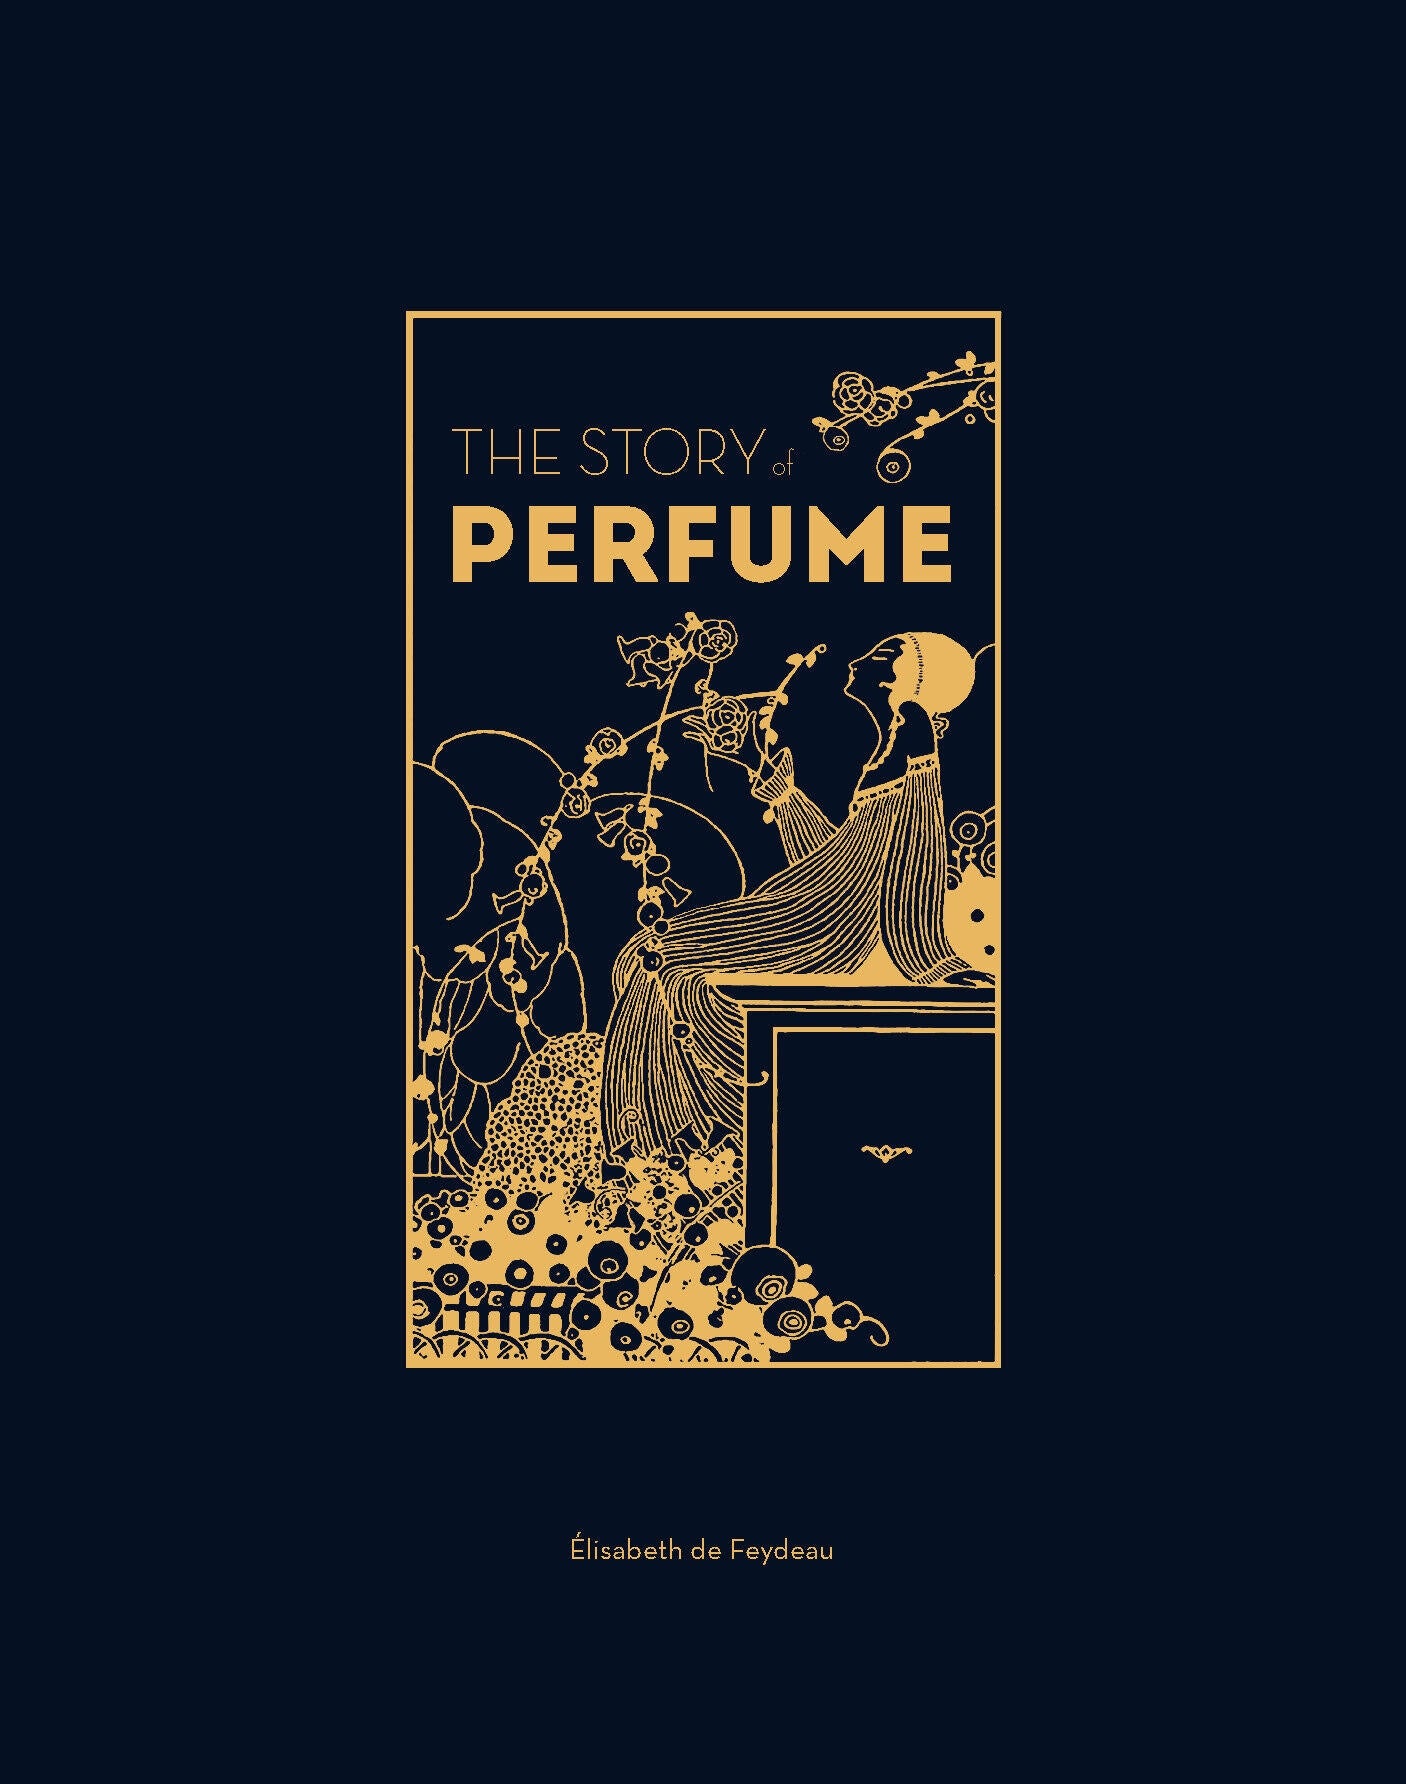 The Story of Perfume by Elisabeth de Feydeau